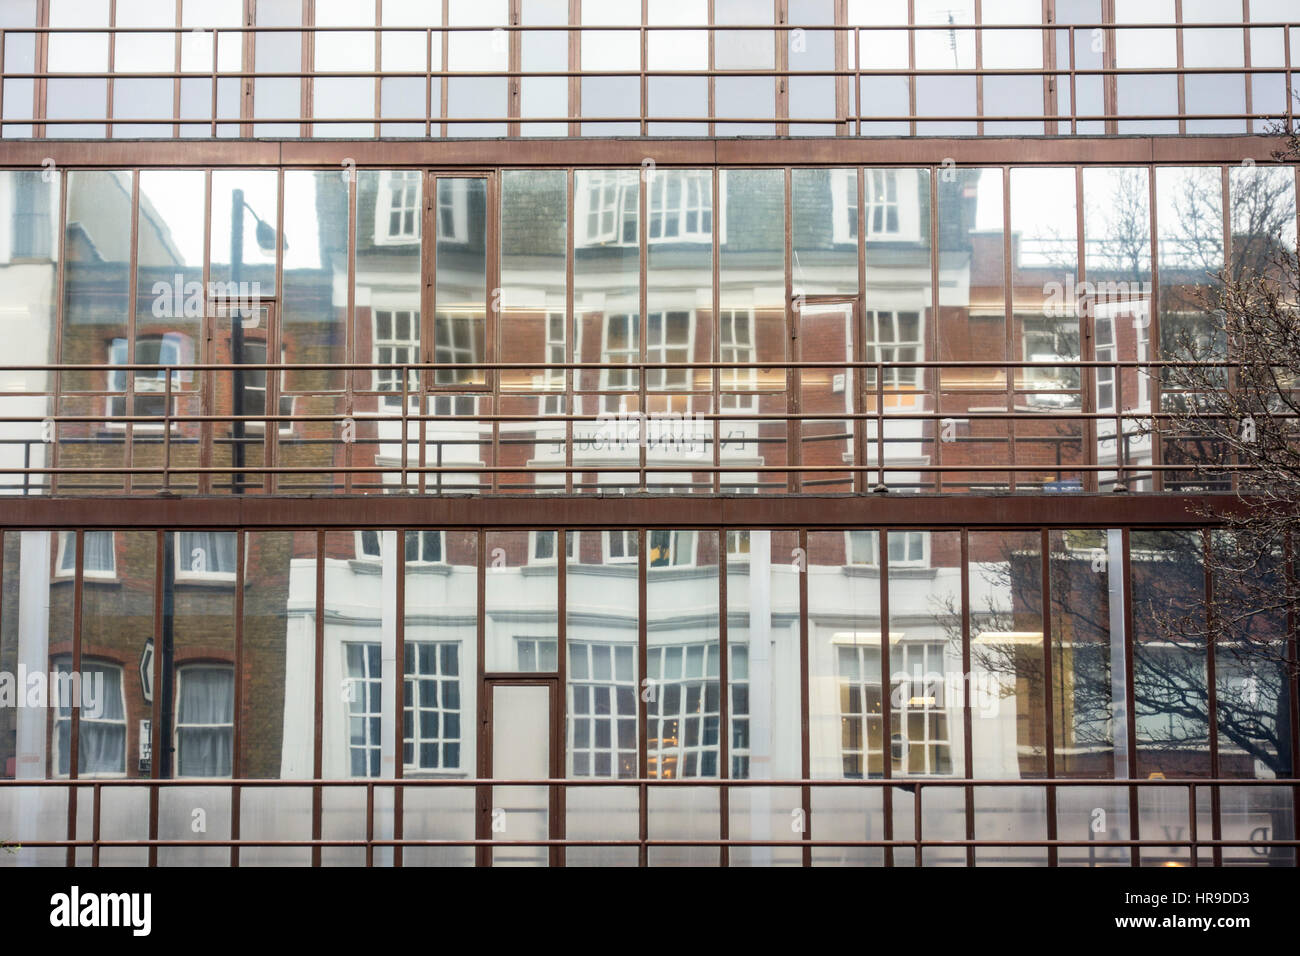 Architettura Brutalist Londra: Università di Westminster, 115 nuovi Cavendish Street, Fitzrovia, Londra. moderno in cemento edificio brutalism Foto Stock